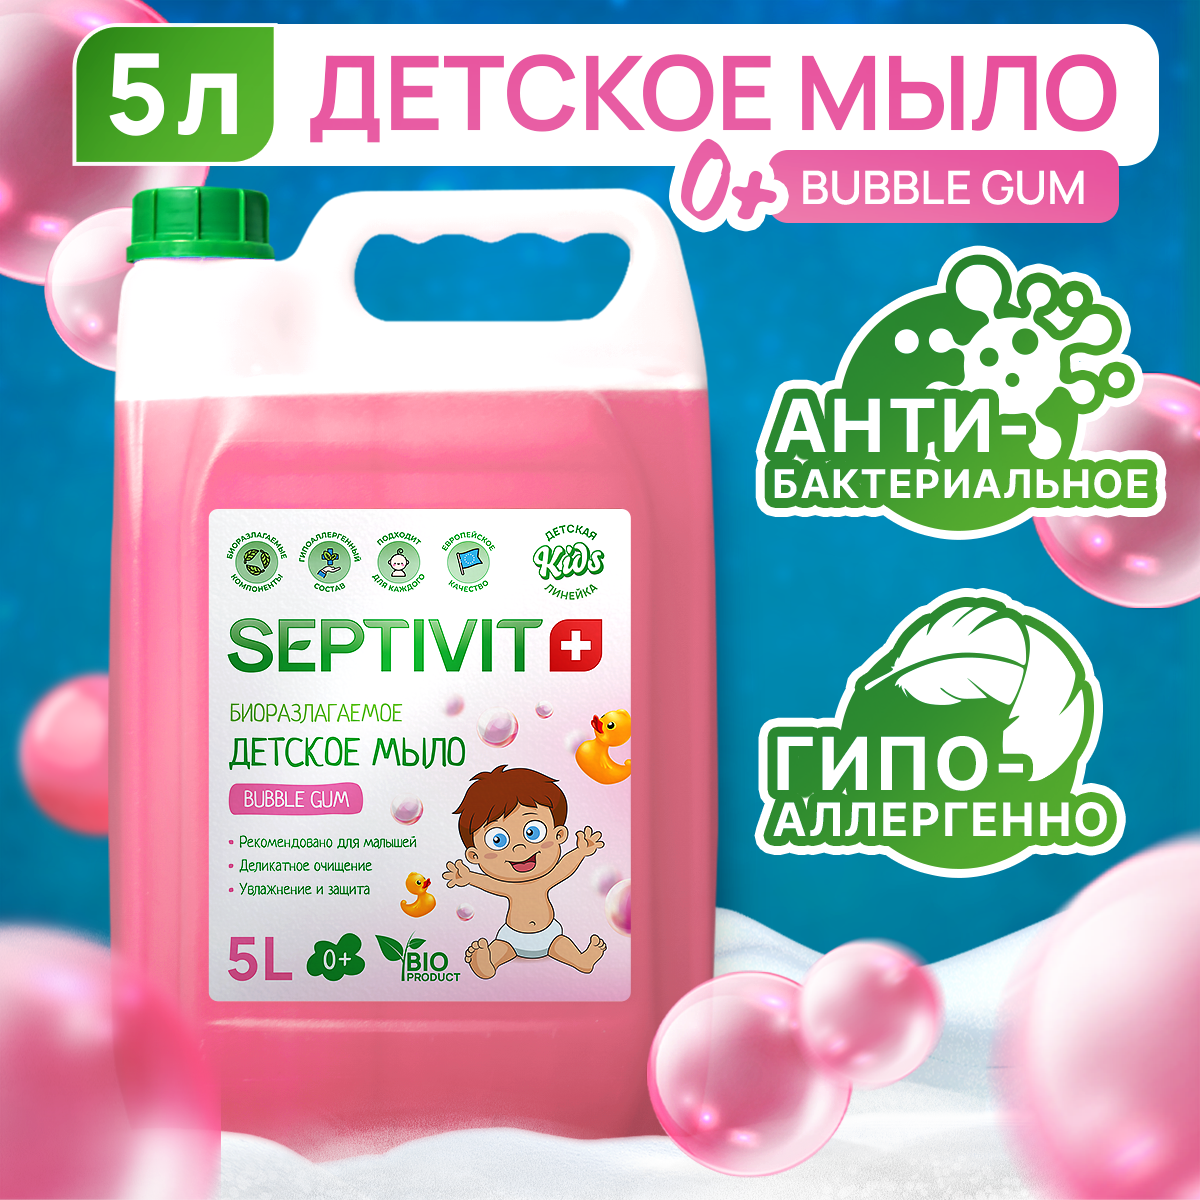 Детское жидкое мыло SEPTIVIT Premium Bubble Gum 5 л - фото 1